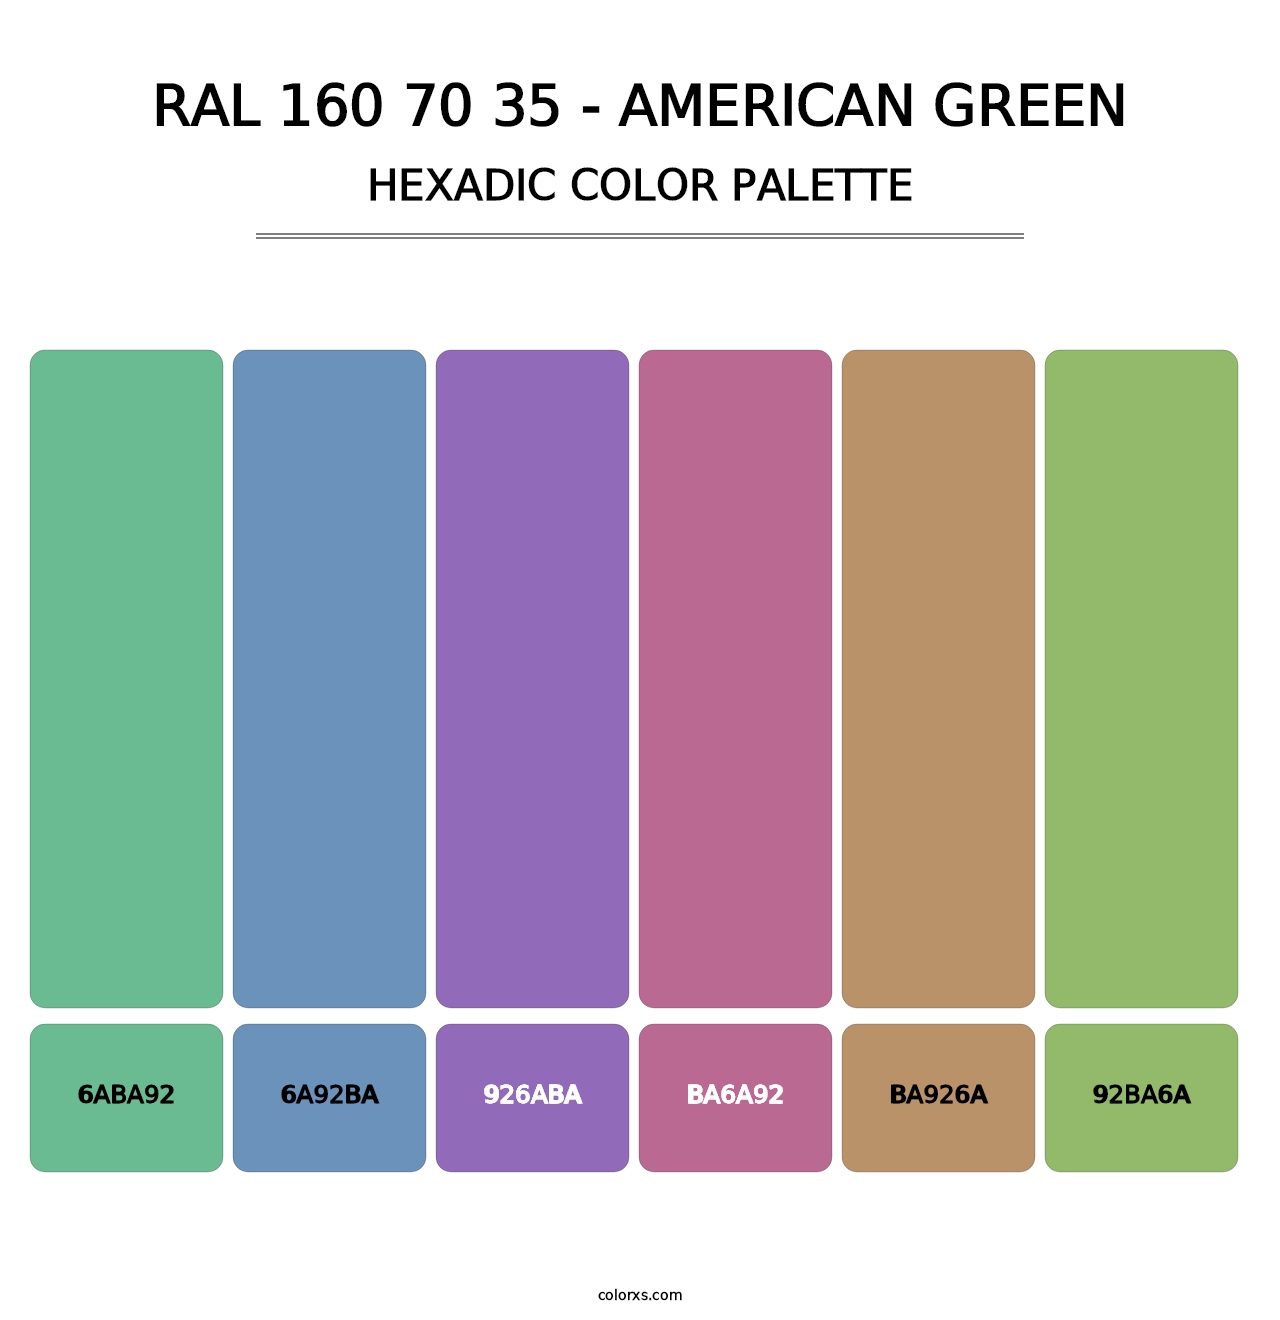 RAL 160 70 35 - American Green - Hexadic Color Palette